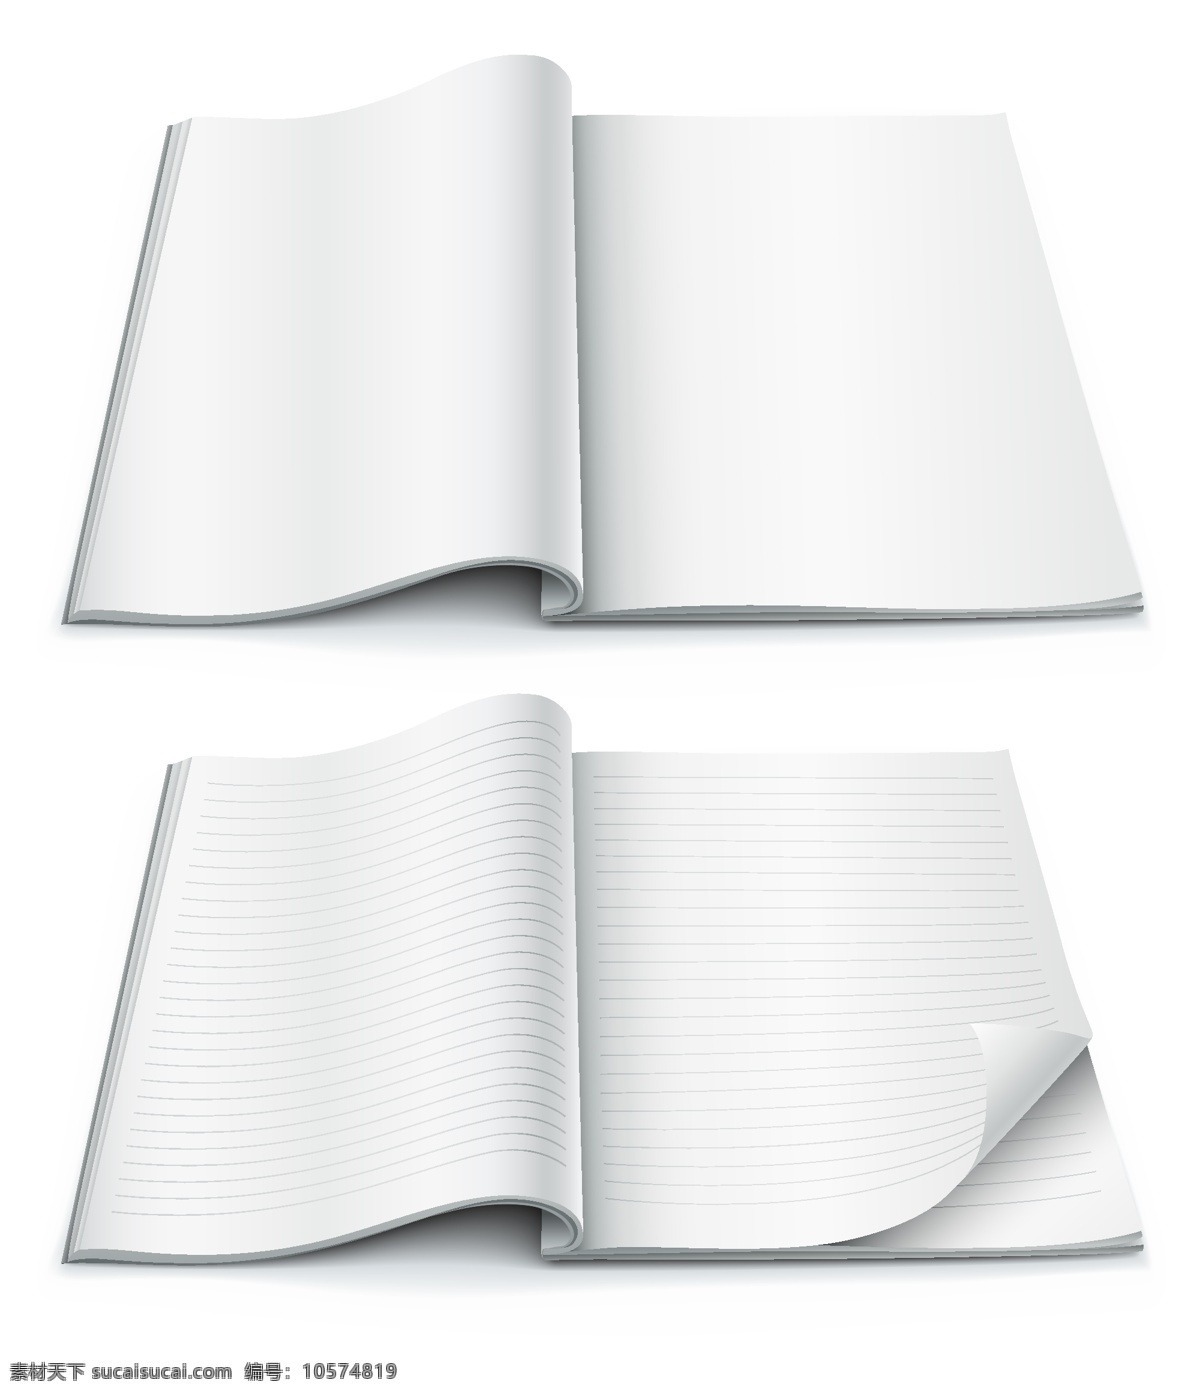 矢量 空白 笔记本 素材图片 翻页 精致 卷角 矢量素材 纸张 空白页 矢量图